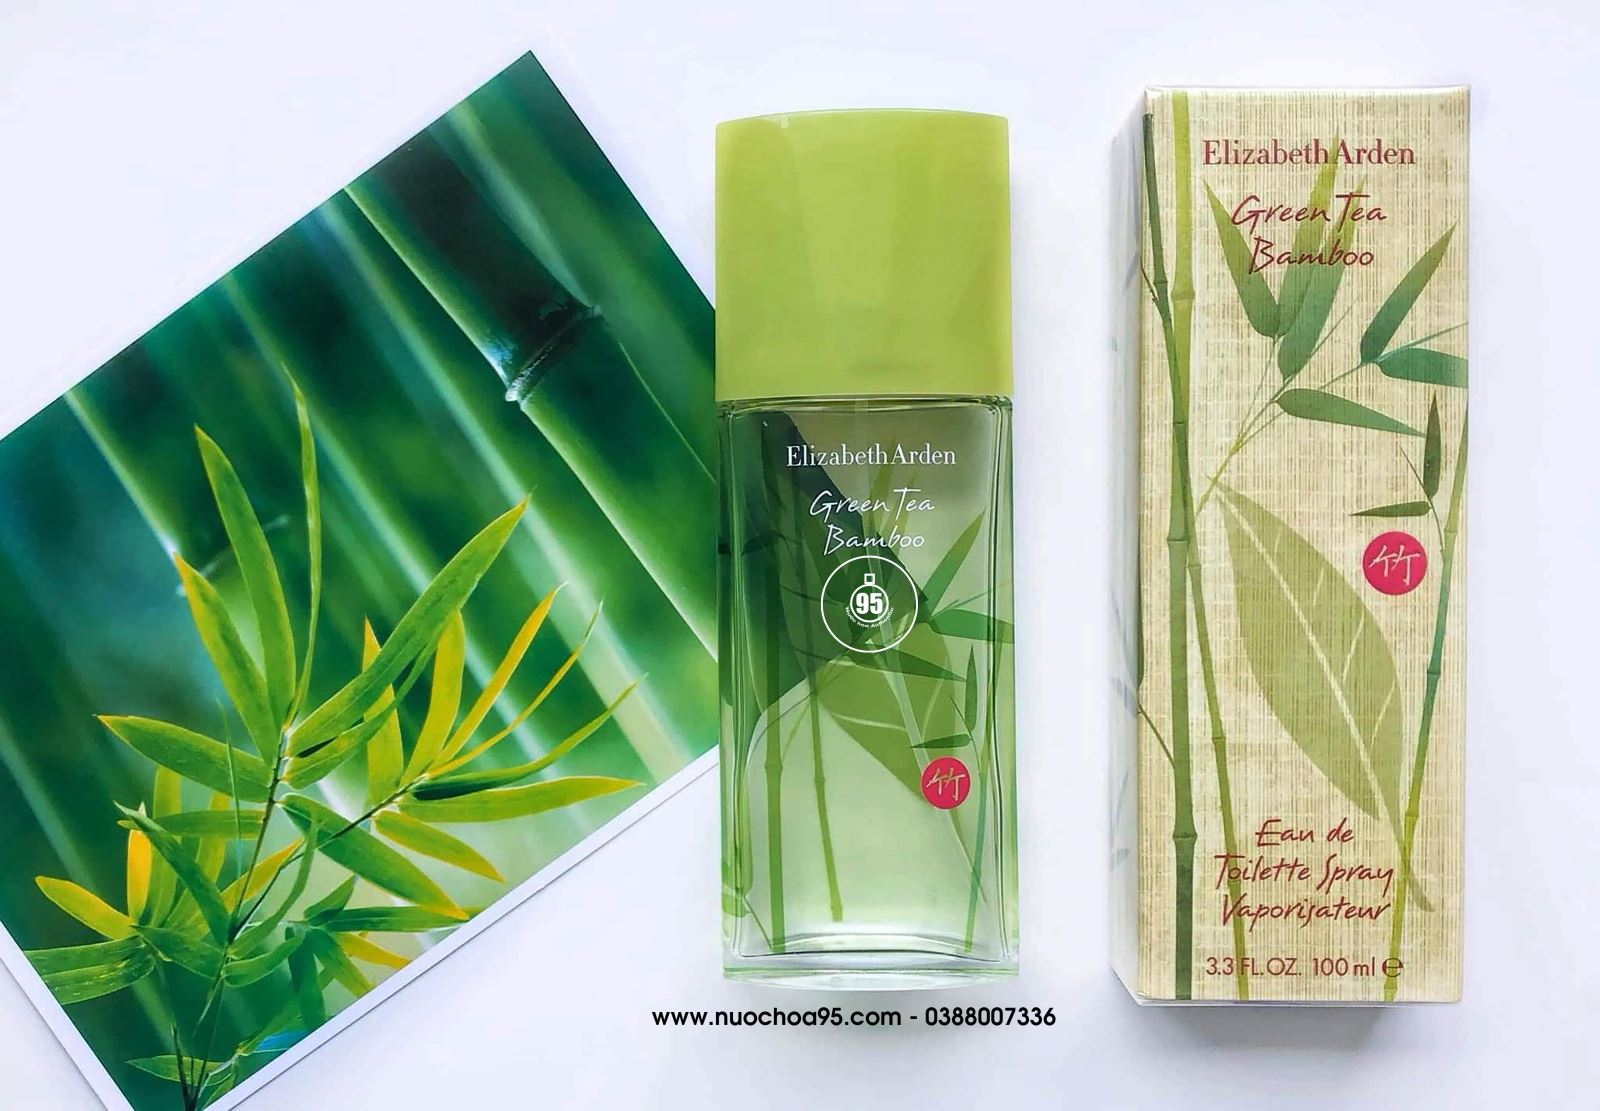 Nước hoa Elizabeth Arden Green Tea Bamboo  - Ảnh 2